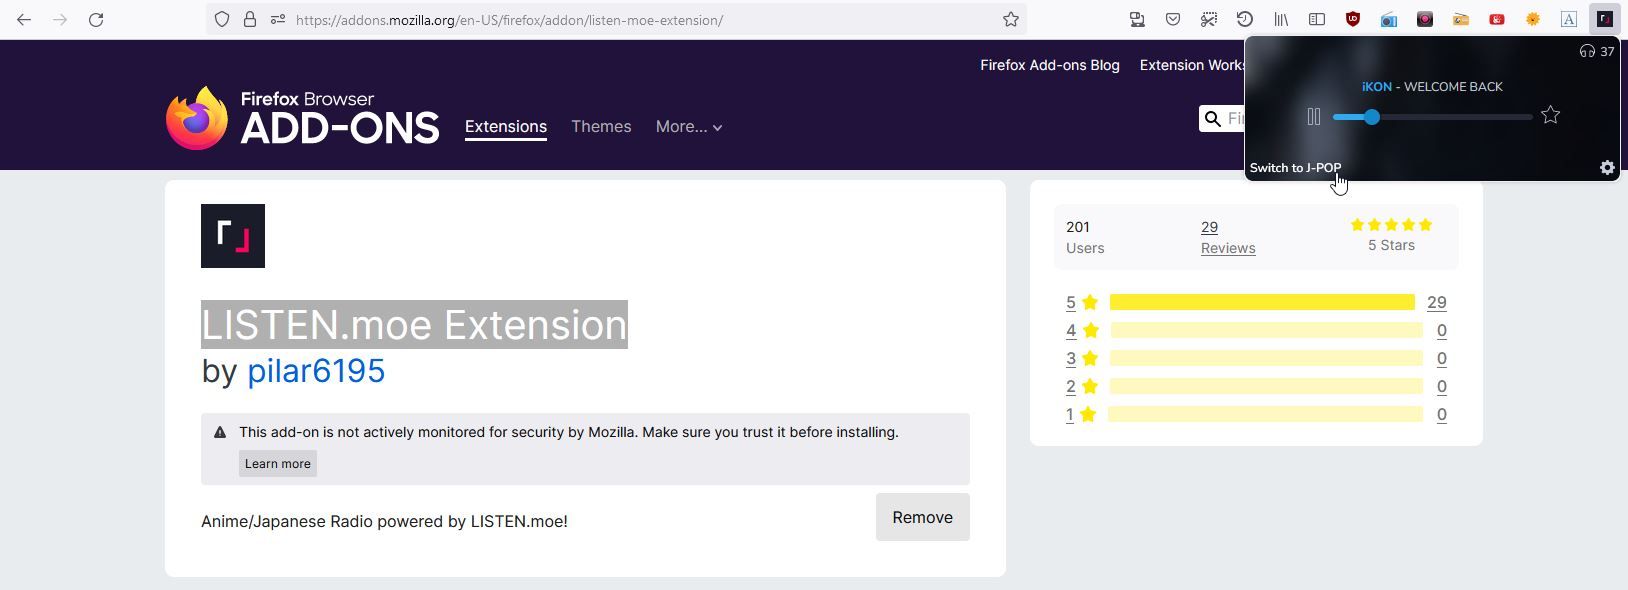 A Screenshot of the LISTEN moe Extension Firefox Add on 